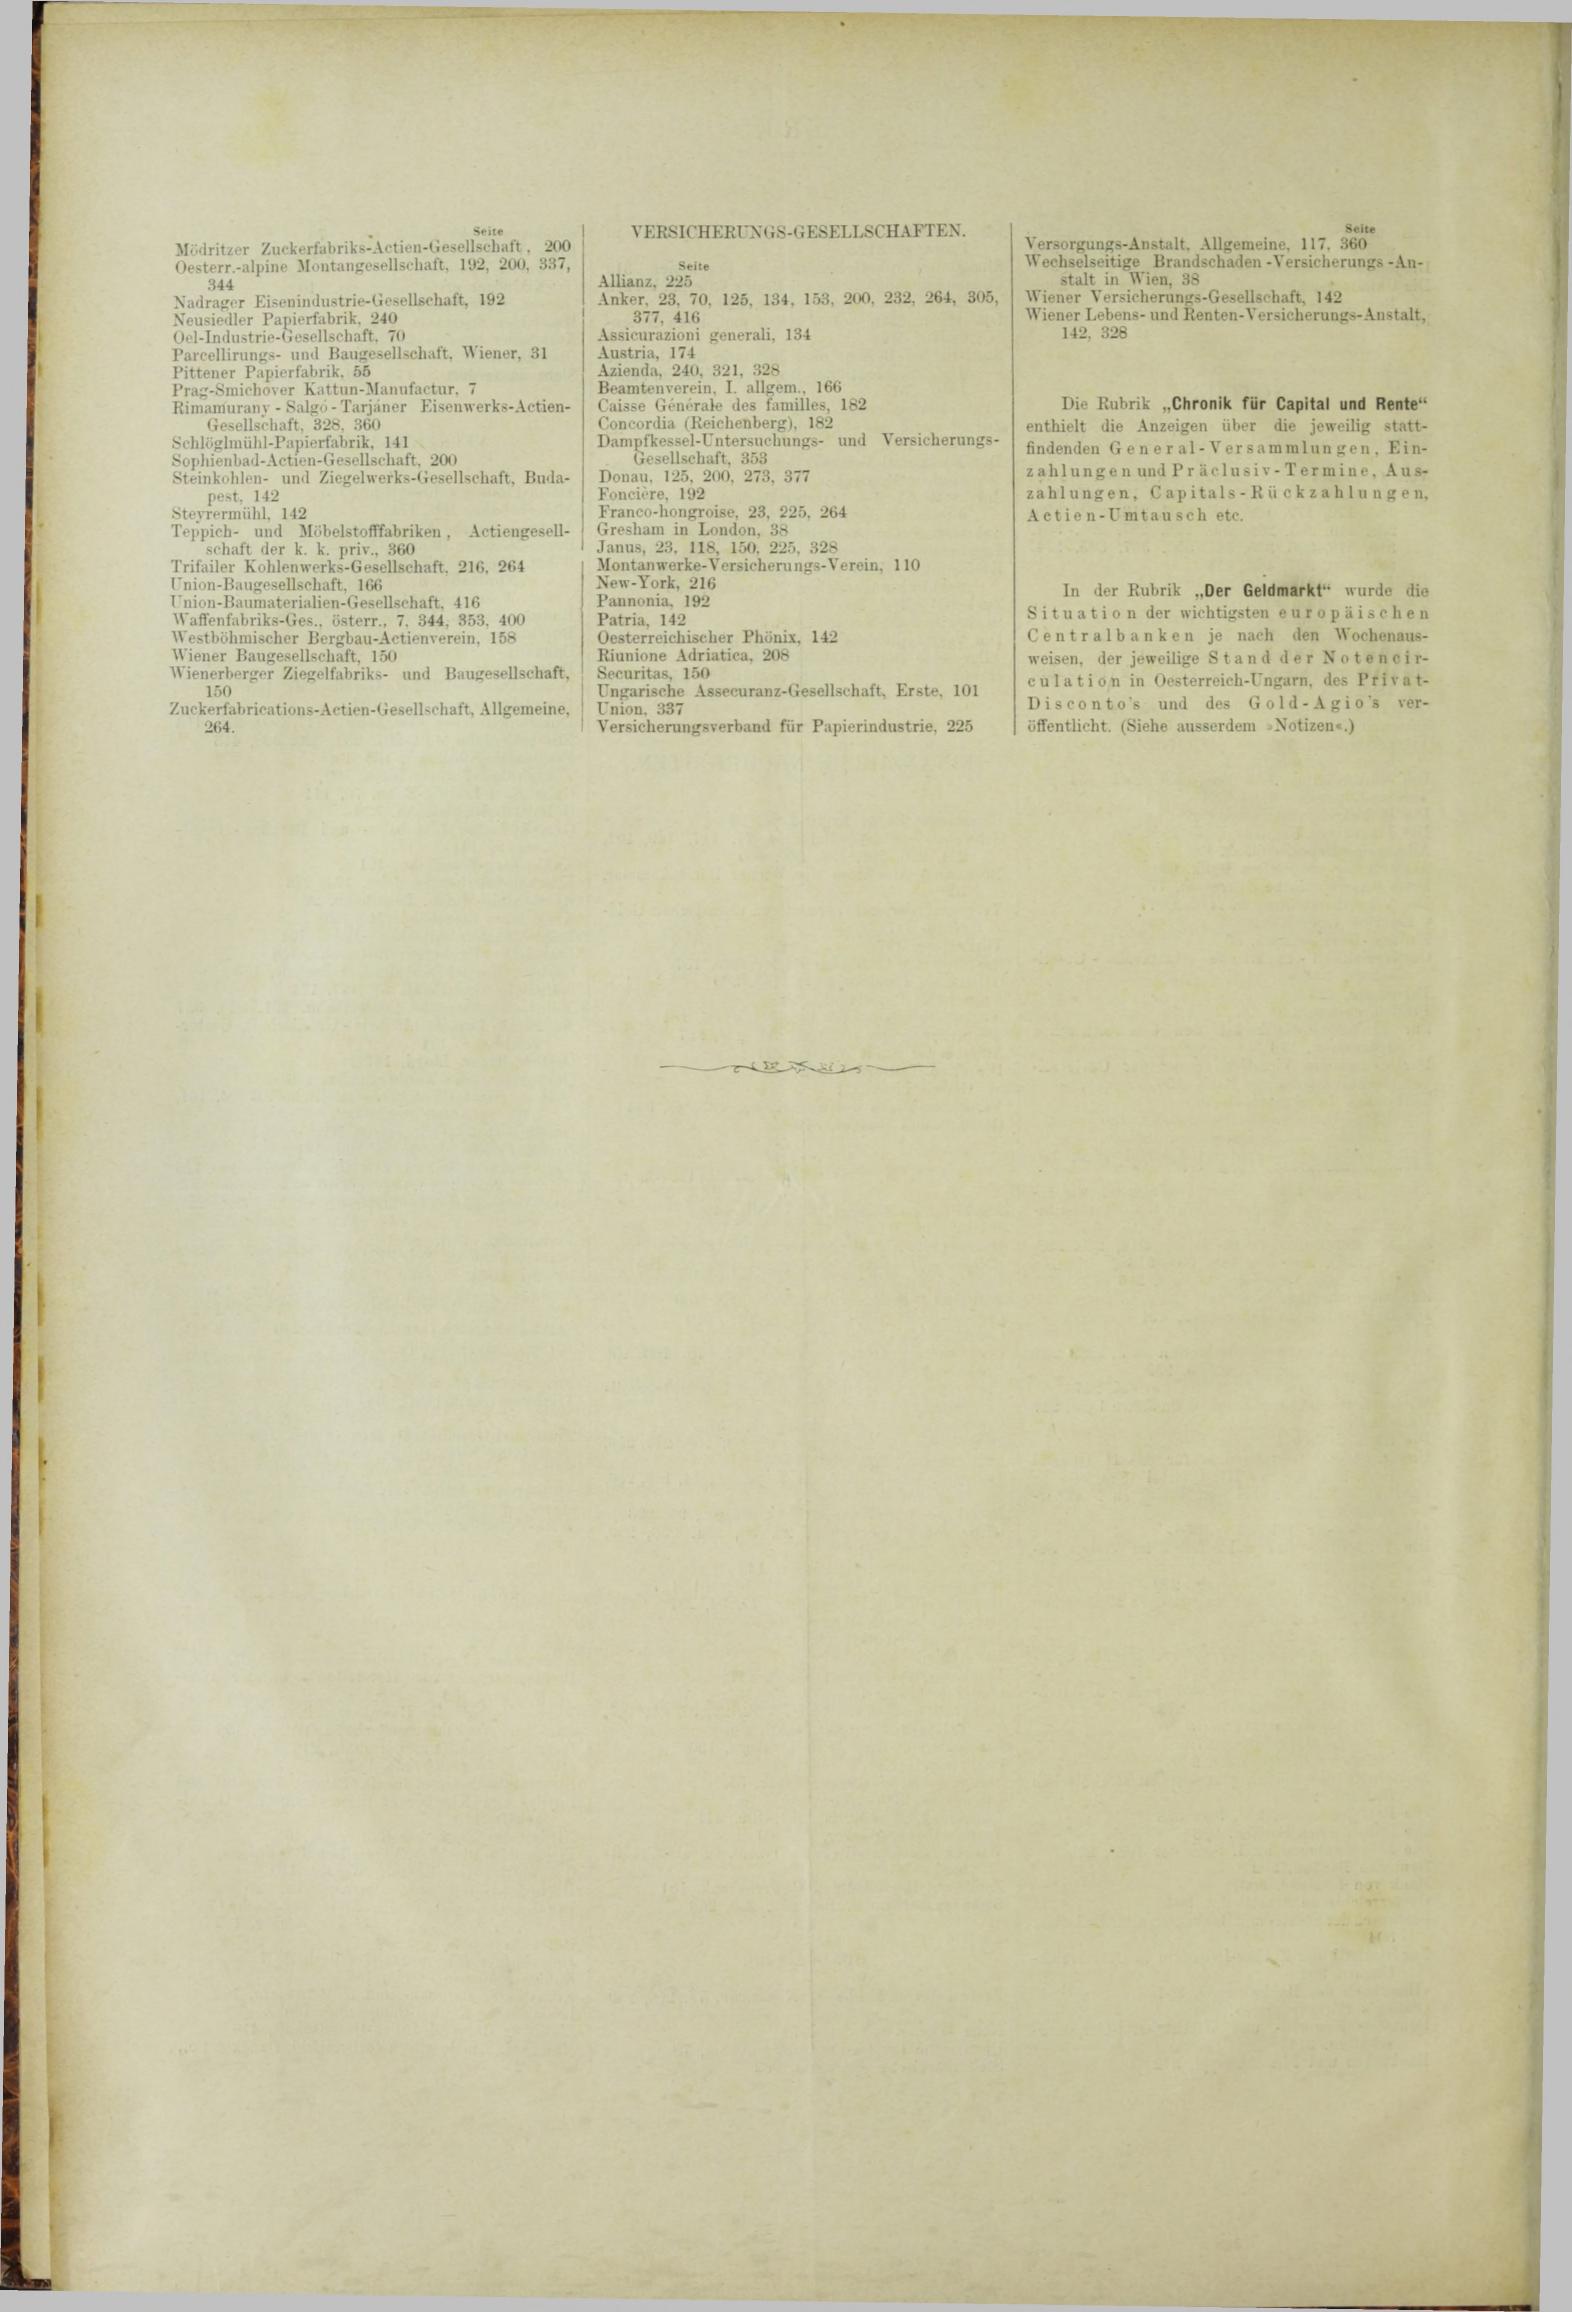 Der Tresor 23.08.1883 - Seite 12